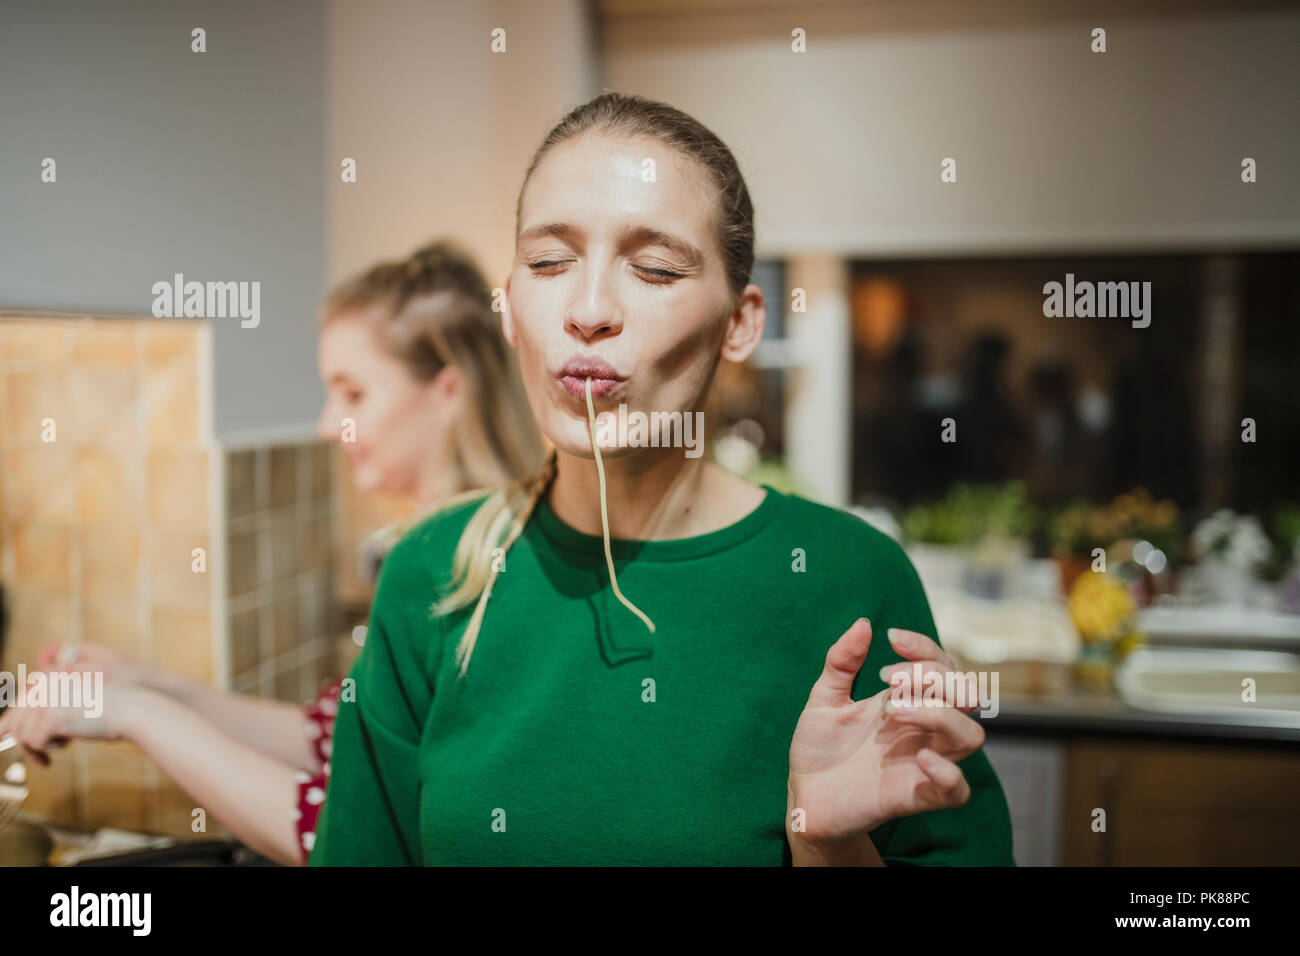 Junge Frau posiert für die Kamera mit Spaghetti hängen ihren Mund. Stockfoto